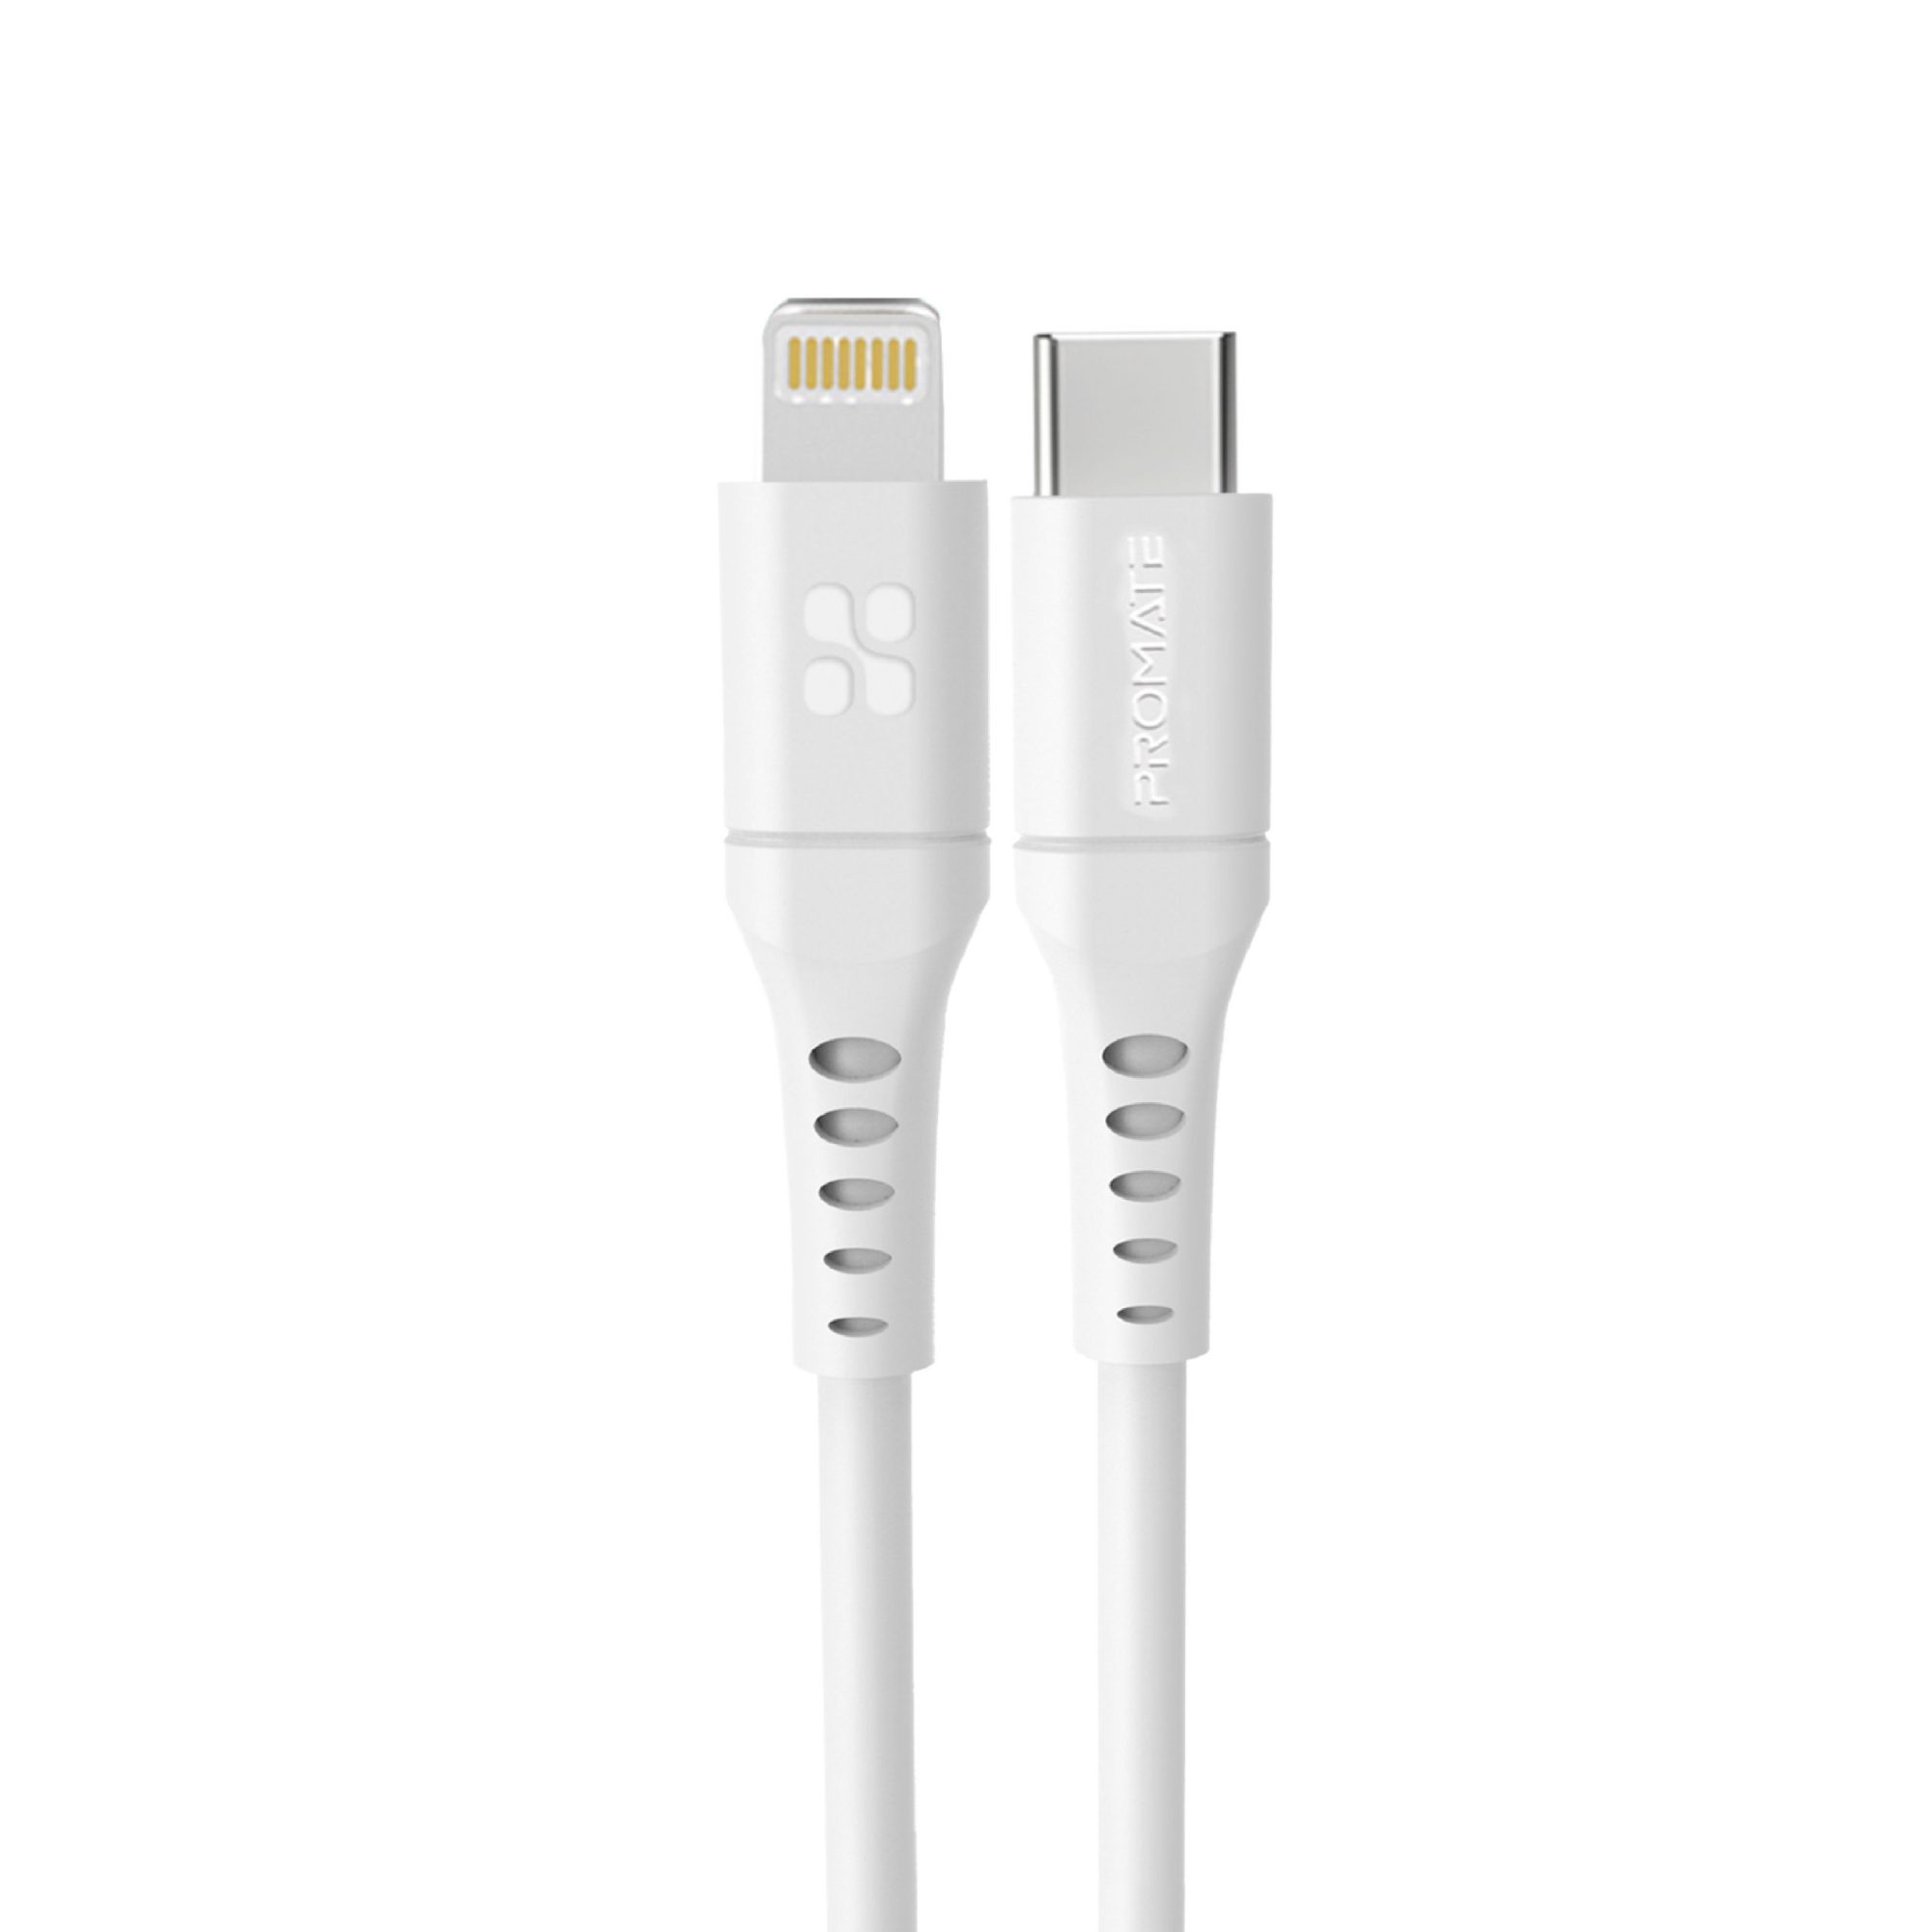 Promate USB-C to Lightning Cable 3m, Powerful 20W Power Delivery Fast Charging Silicone Lightning Cable with 480 Mbps Data Sync and 3A Power Output for iPhone 13/13 Pro/13 Pro Max, iPad Pro, PowerLink-300 White